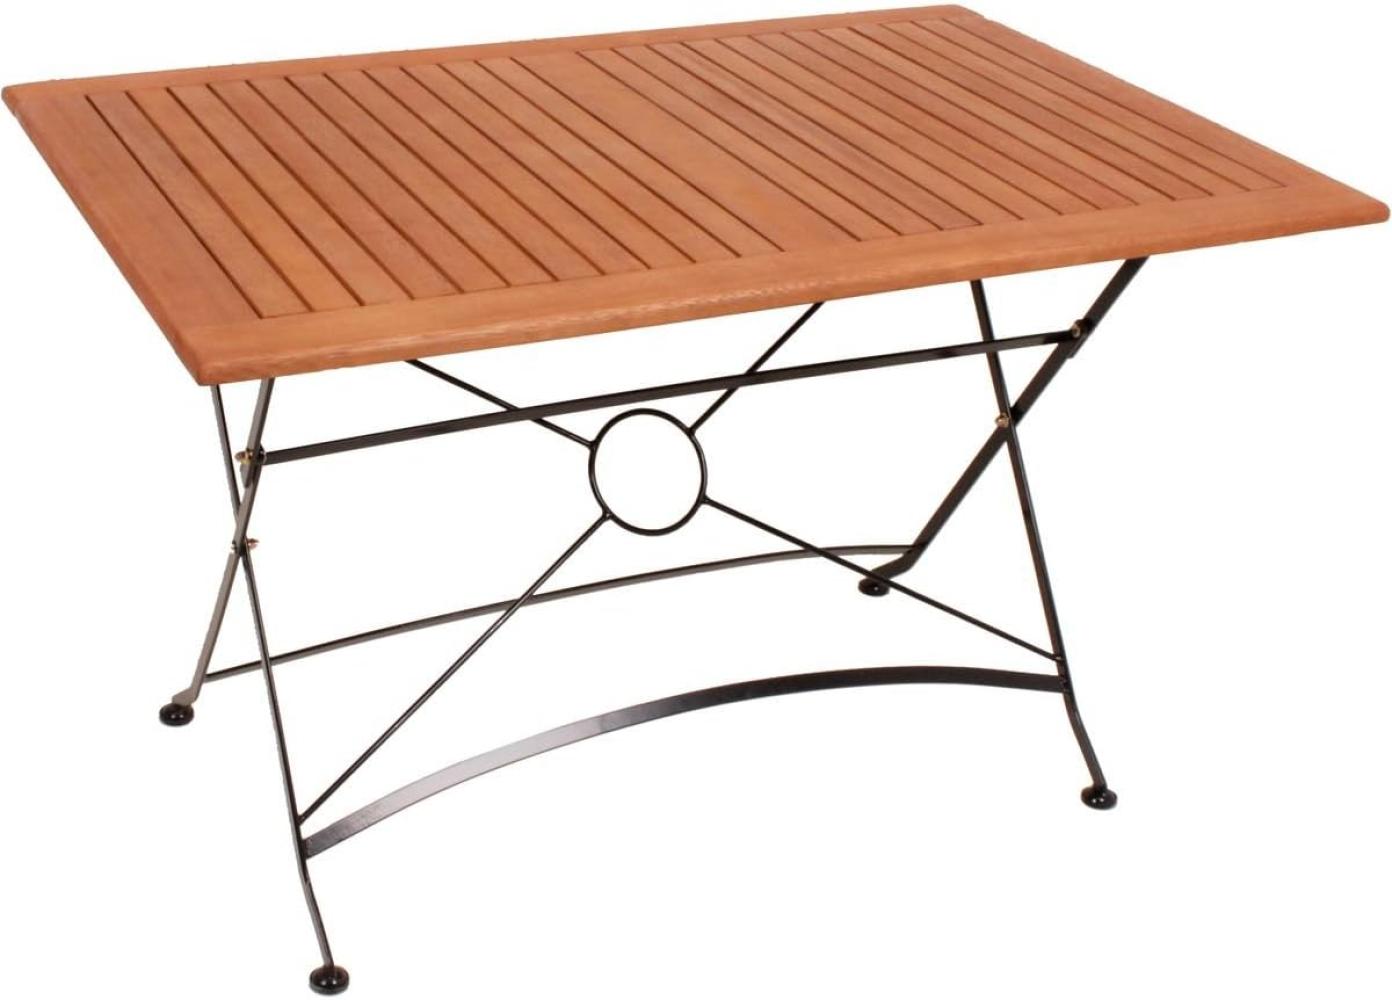 Tisch Gartentisch Kaffeetisch Holztisch klappbar 120x80cm Bild 1